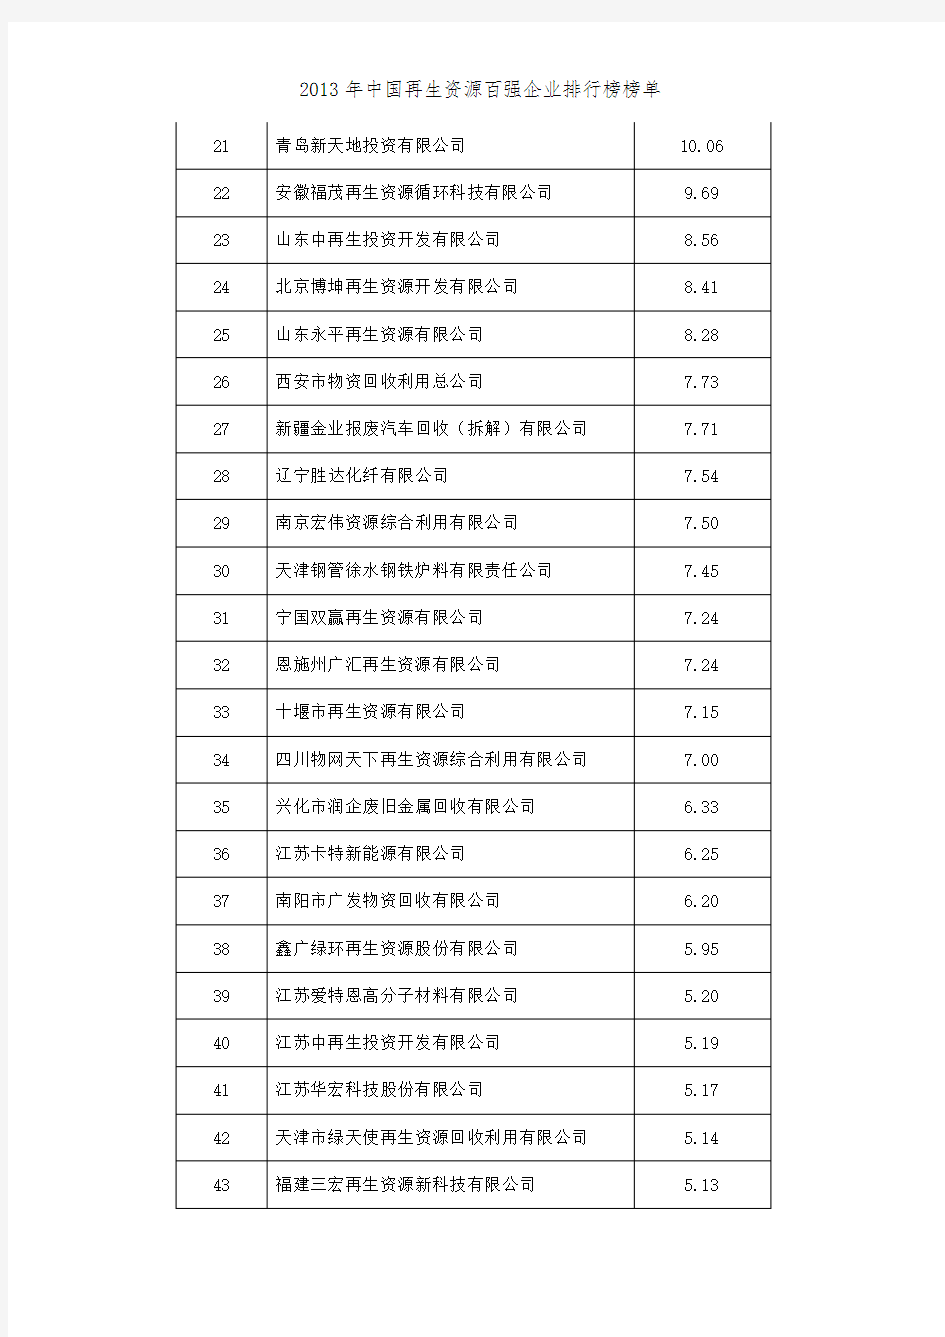 2013年中国再生资源百强企业排行榜榜单